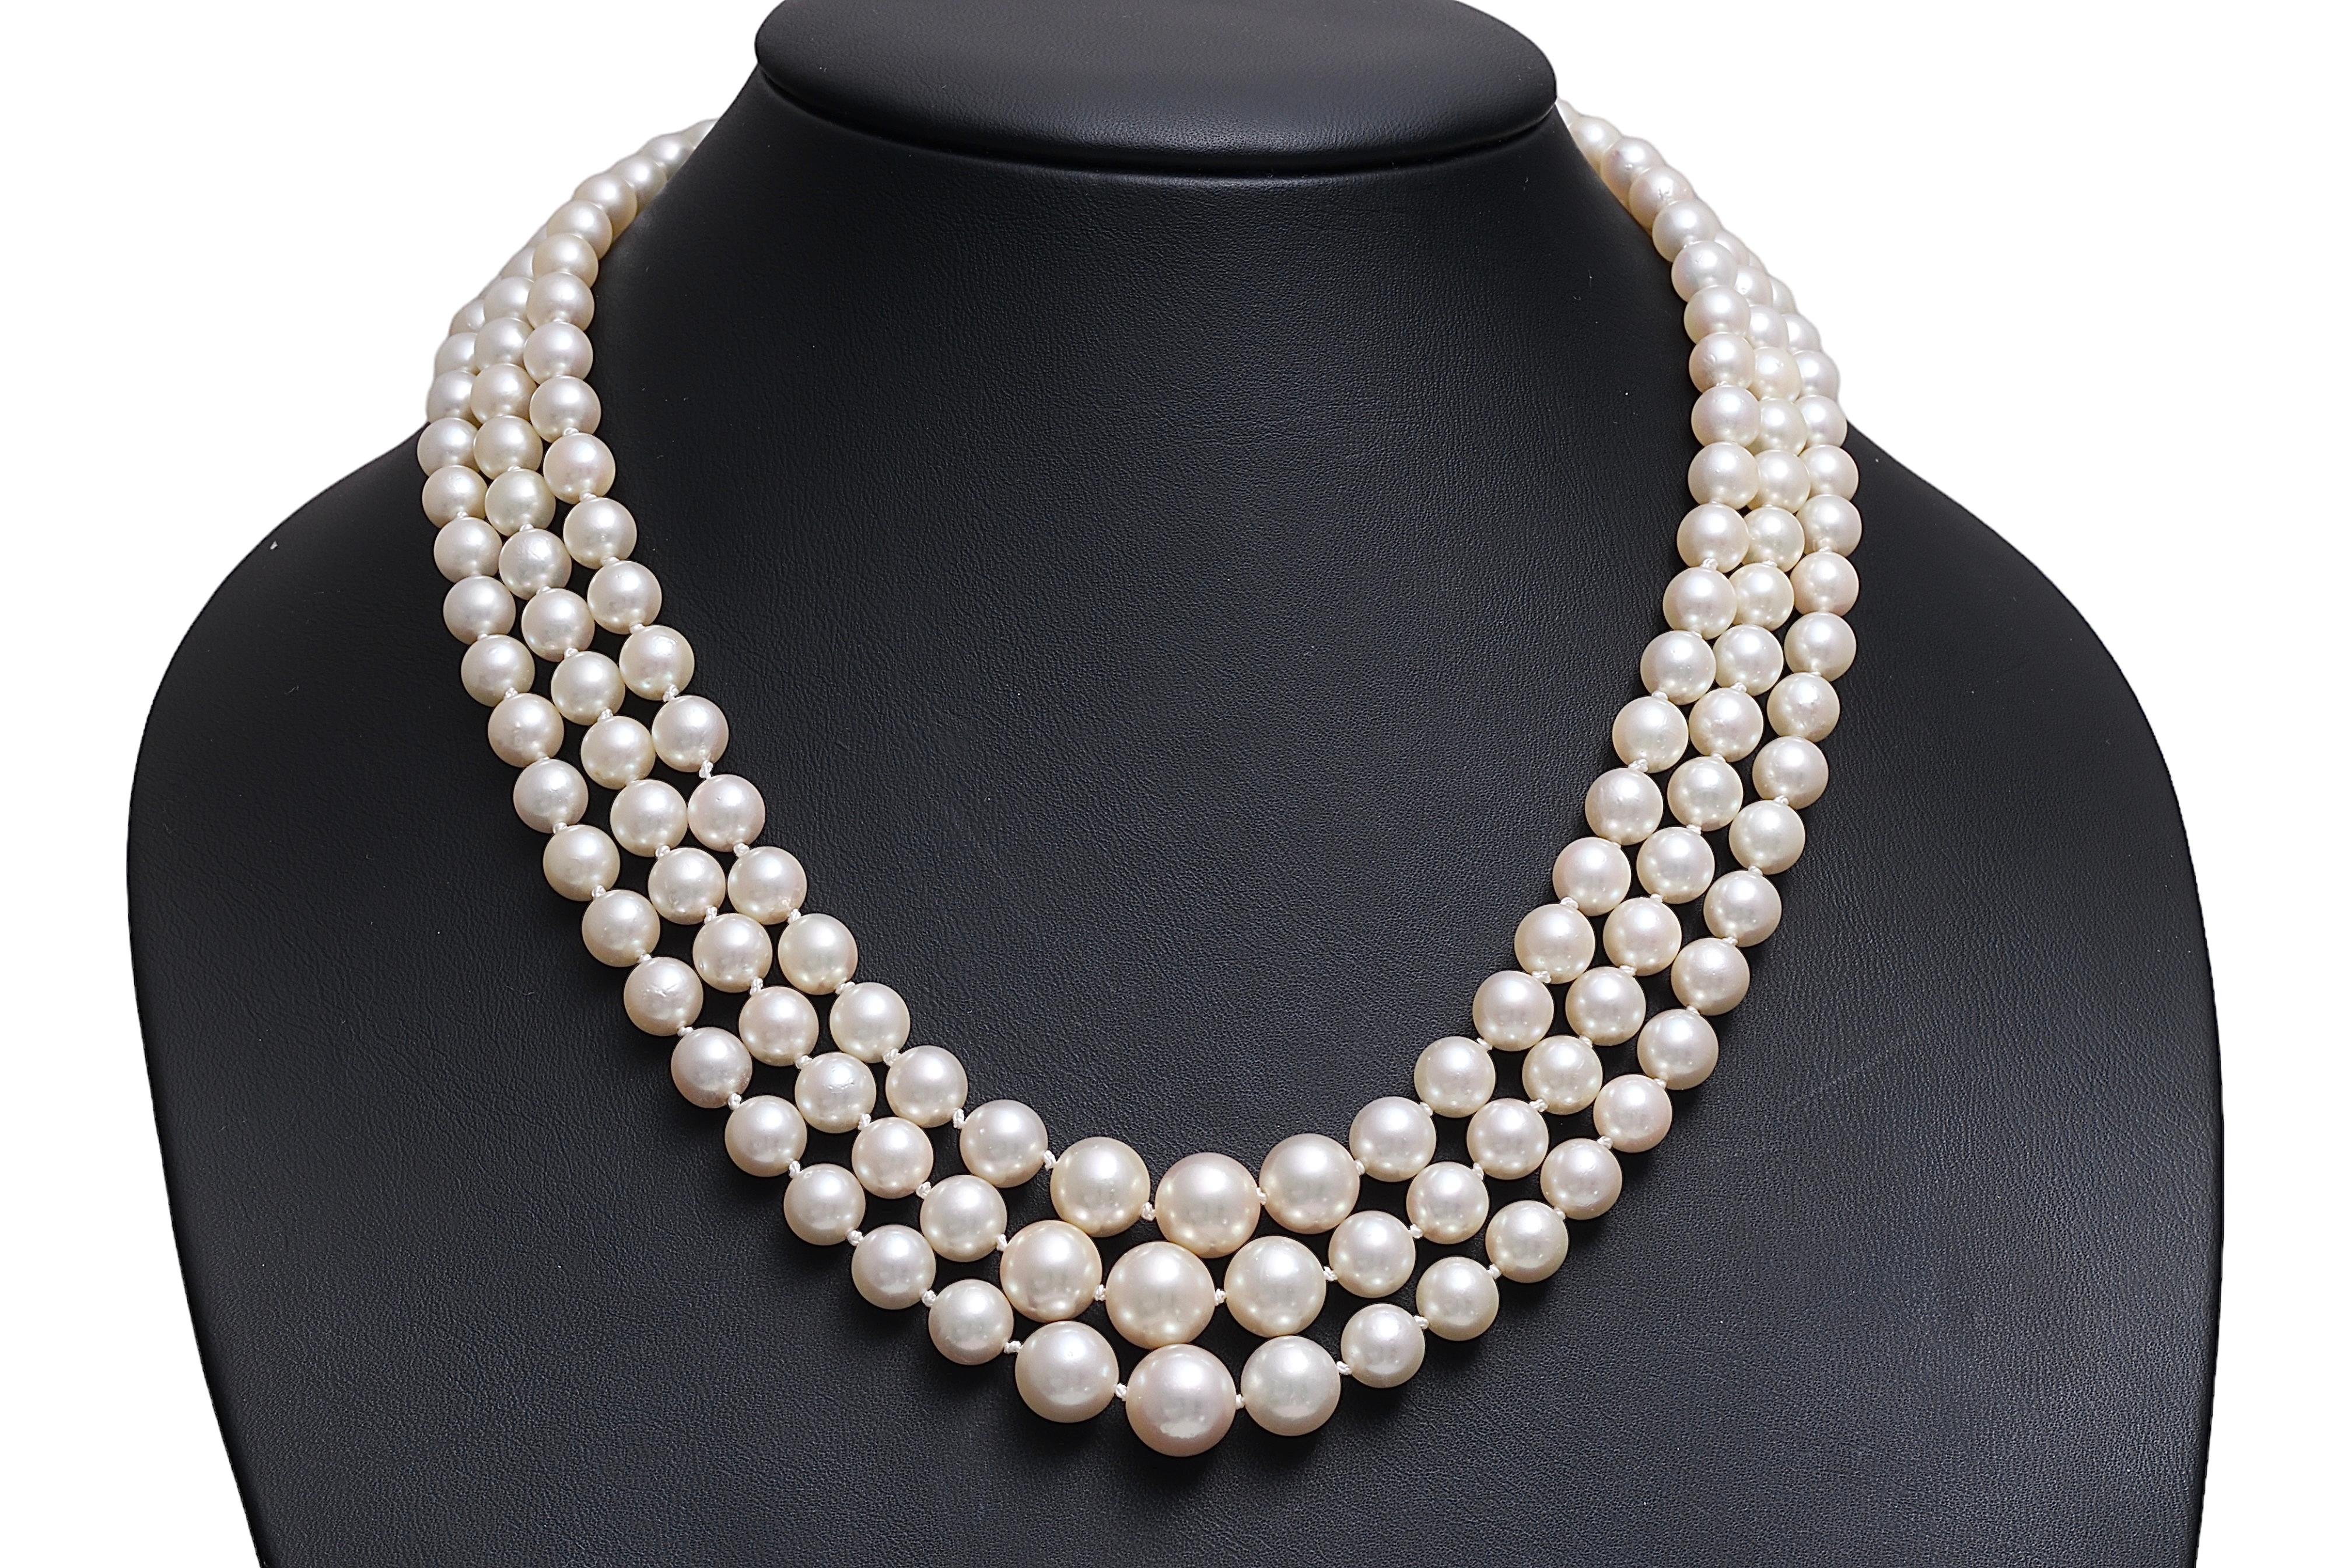 Magnifique collier de perles d'Akoya dégradées à 3 brins avec des perles 18 kt. Cadenas en or blanc avec diamants 

Perles : Superbes perles Akoya parfaites 176, diamètre de la plus grosse perle 9,6 mm

MATERIAL : Collier à mèche 18 kt. Or blanc de